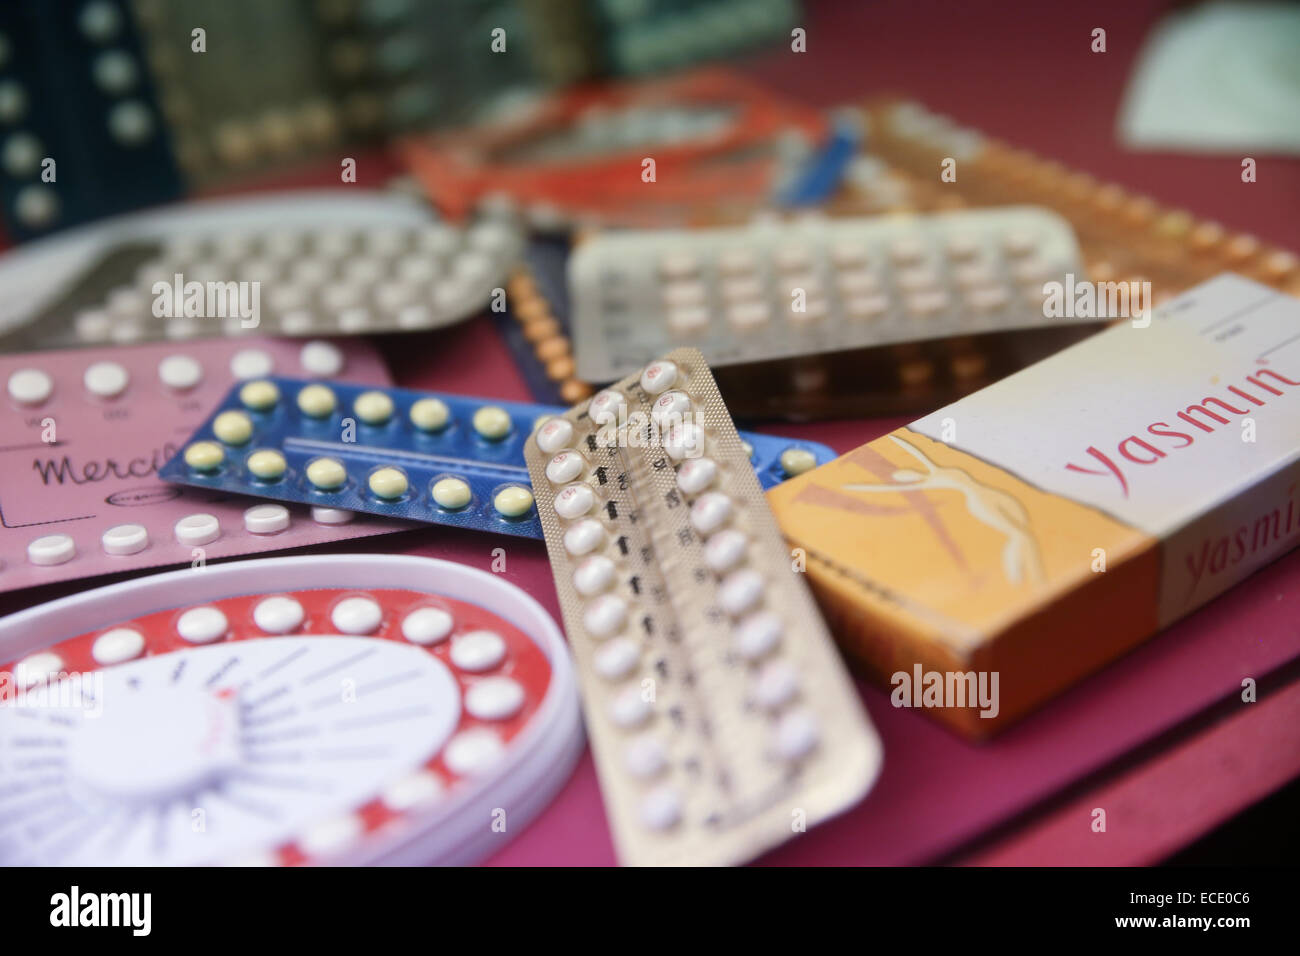 contraceptive drugs birth control pills Stock Photo